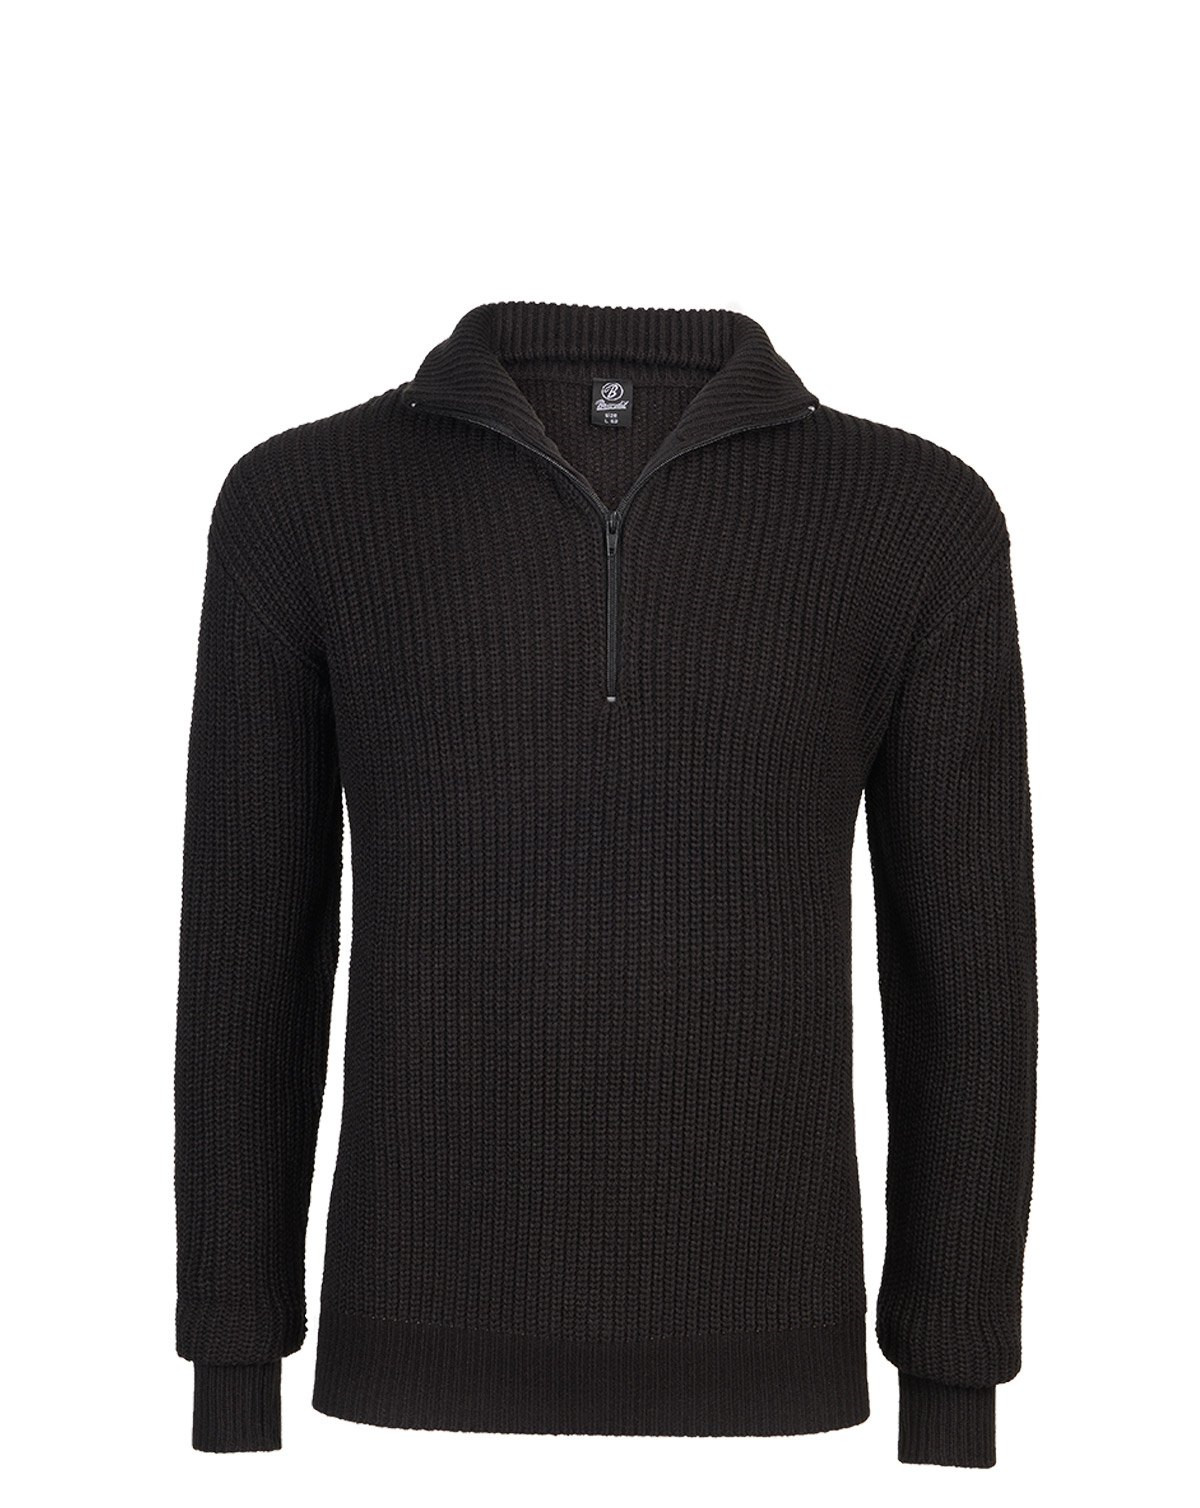 Brandit Marine Pullover Troyer Sweater (Sort, XL)